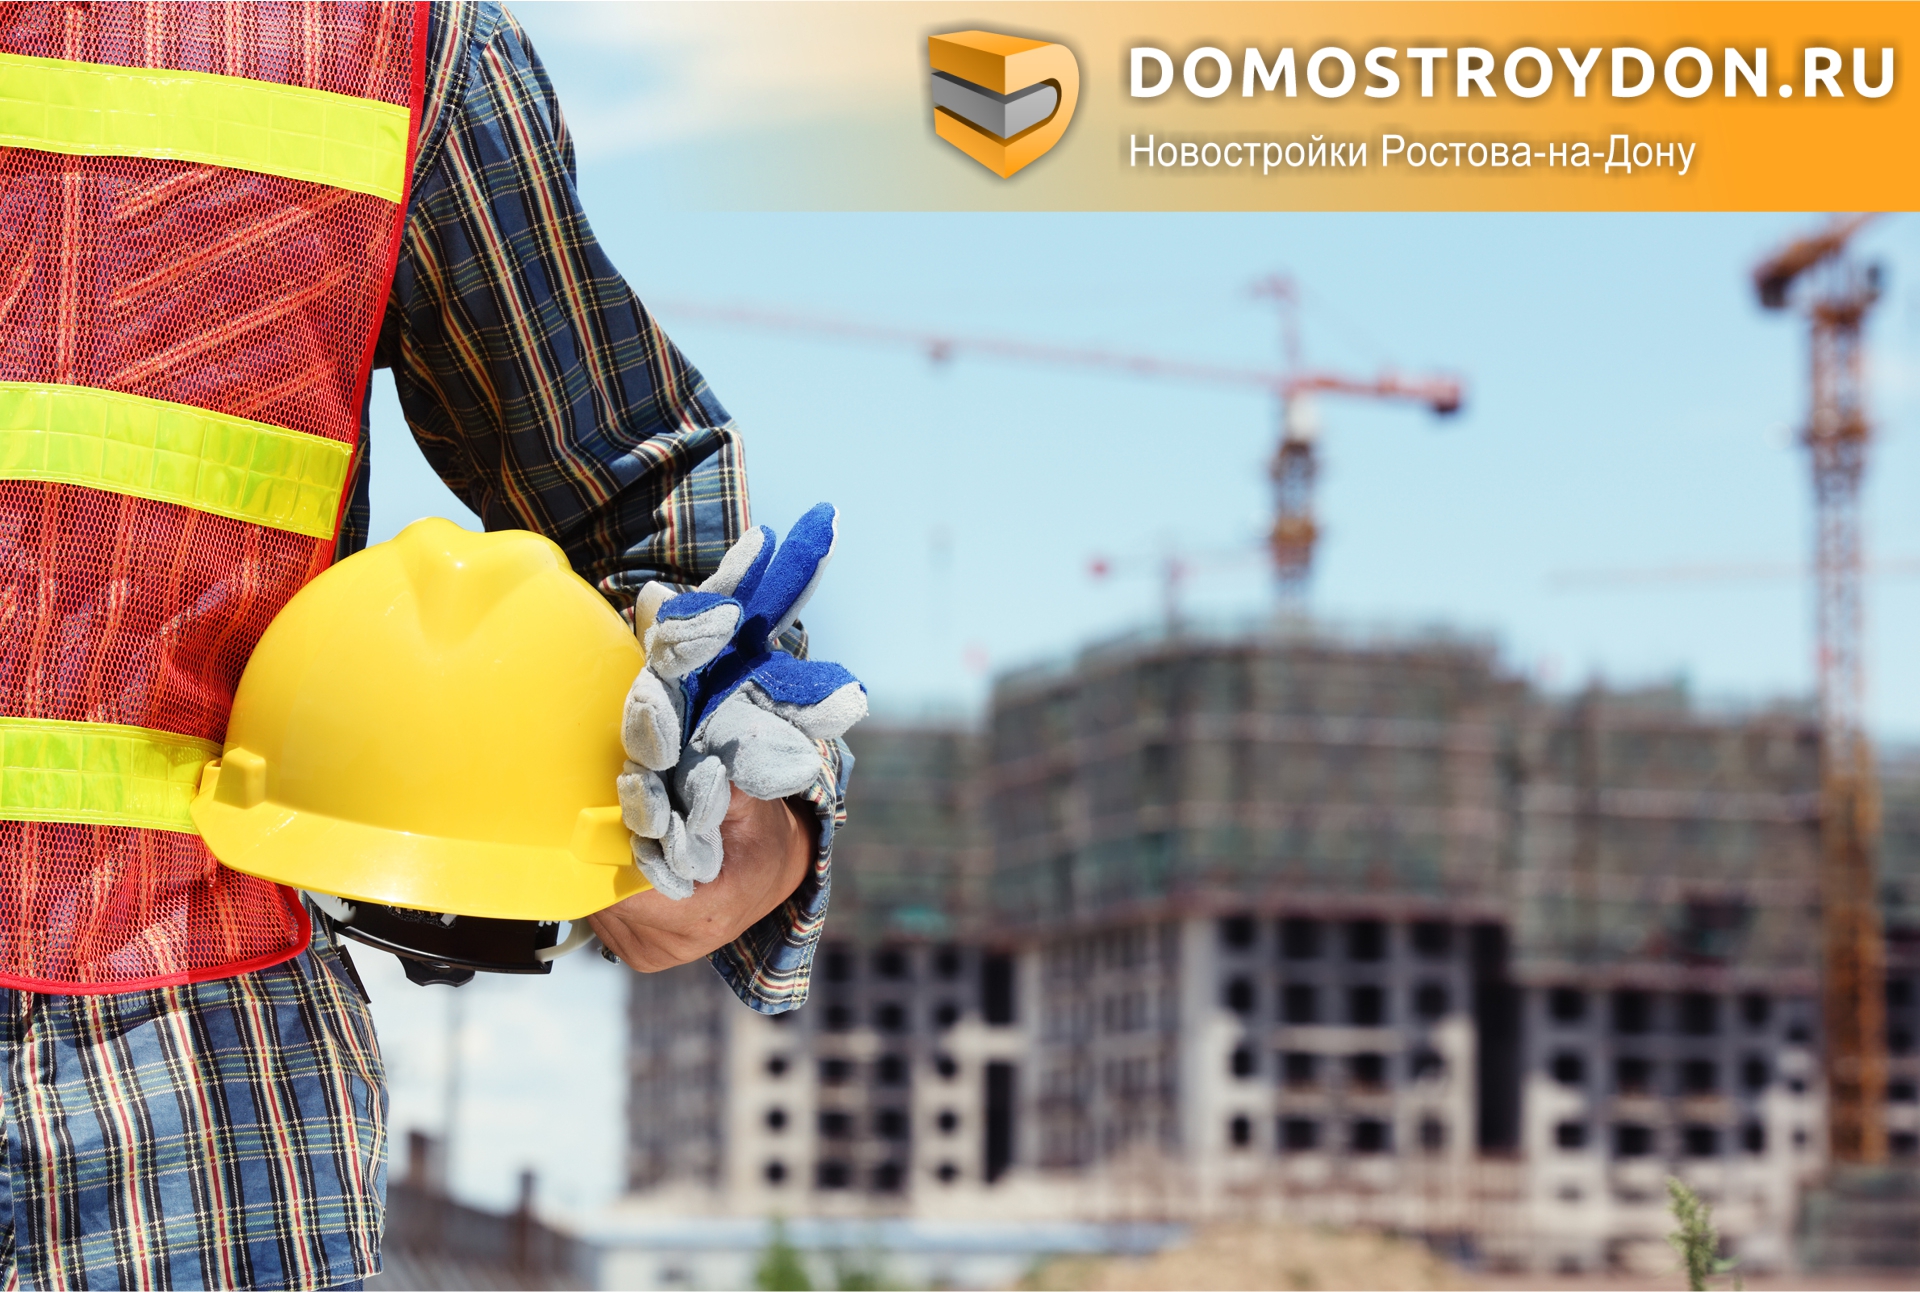 DomostroyDon поздравляет застройщиков Ростовской области с Днем строителя!